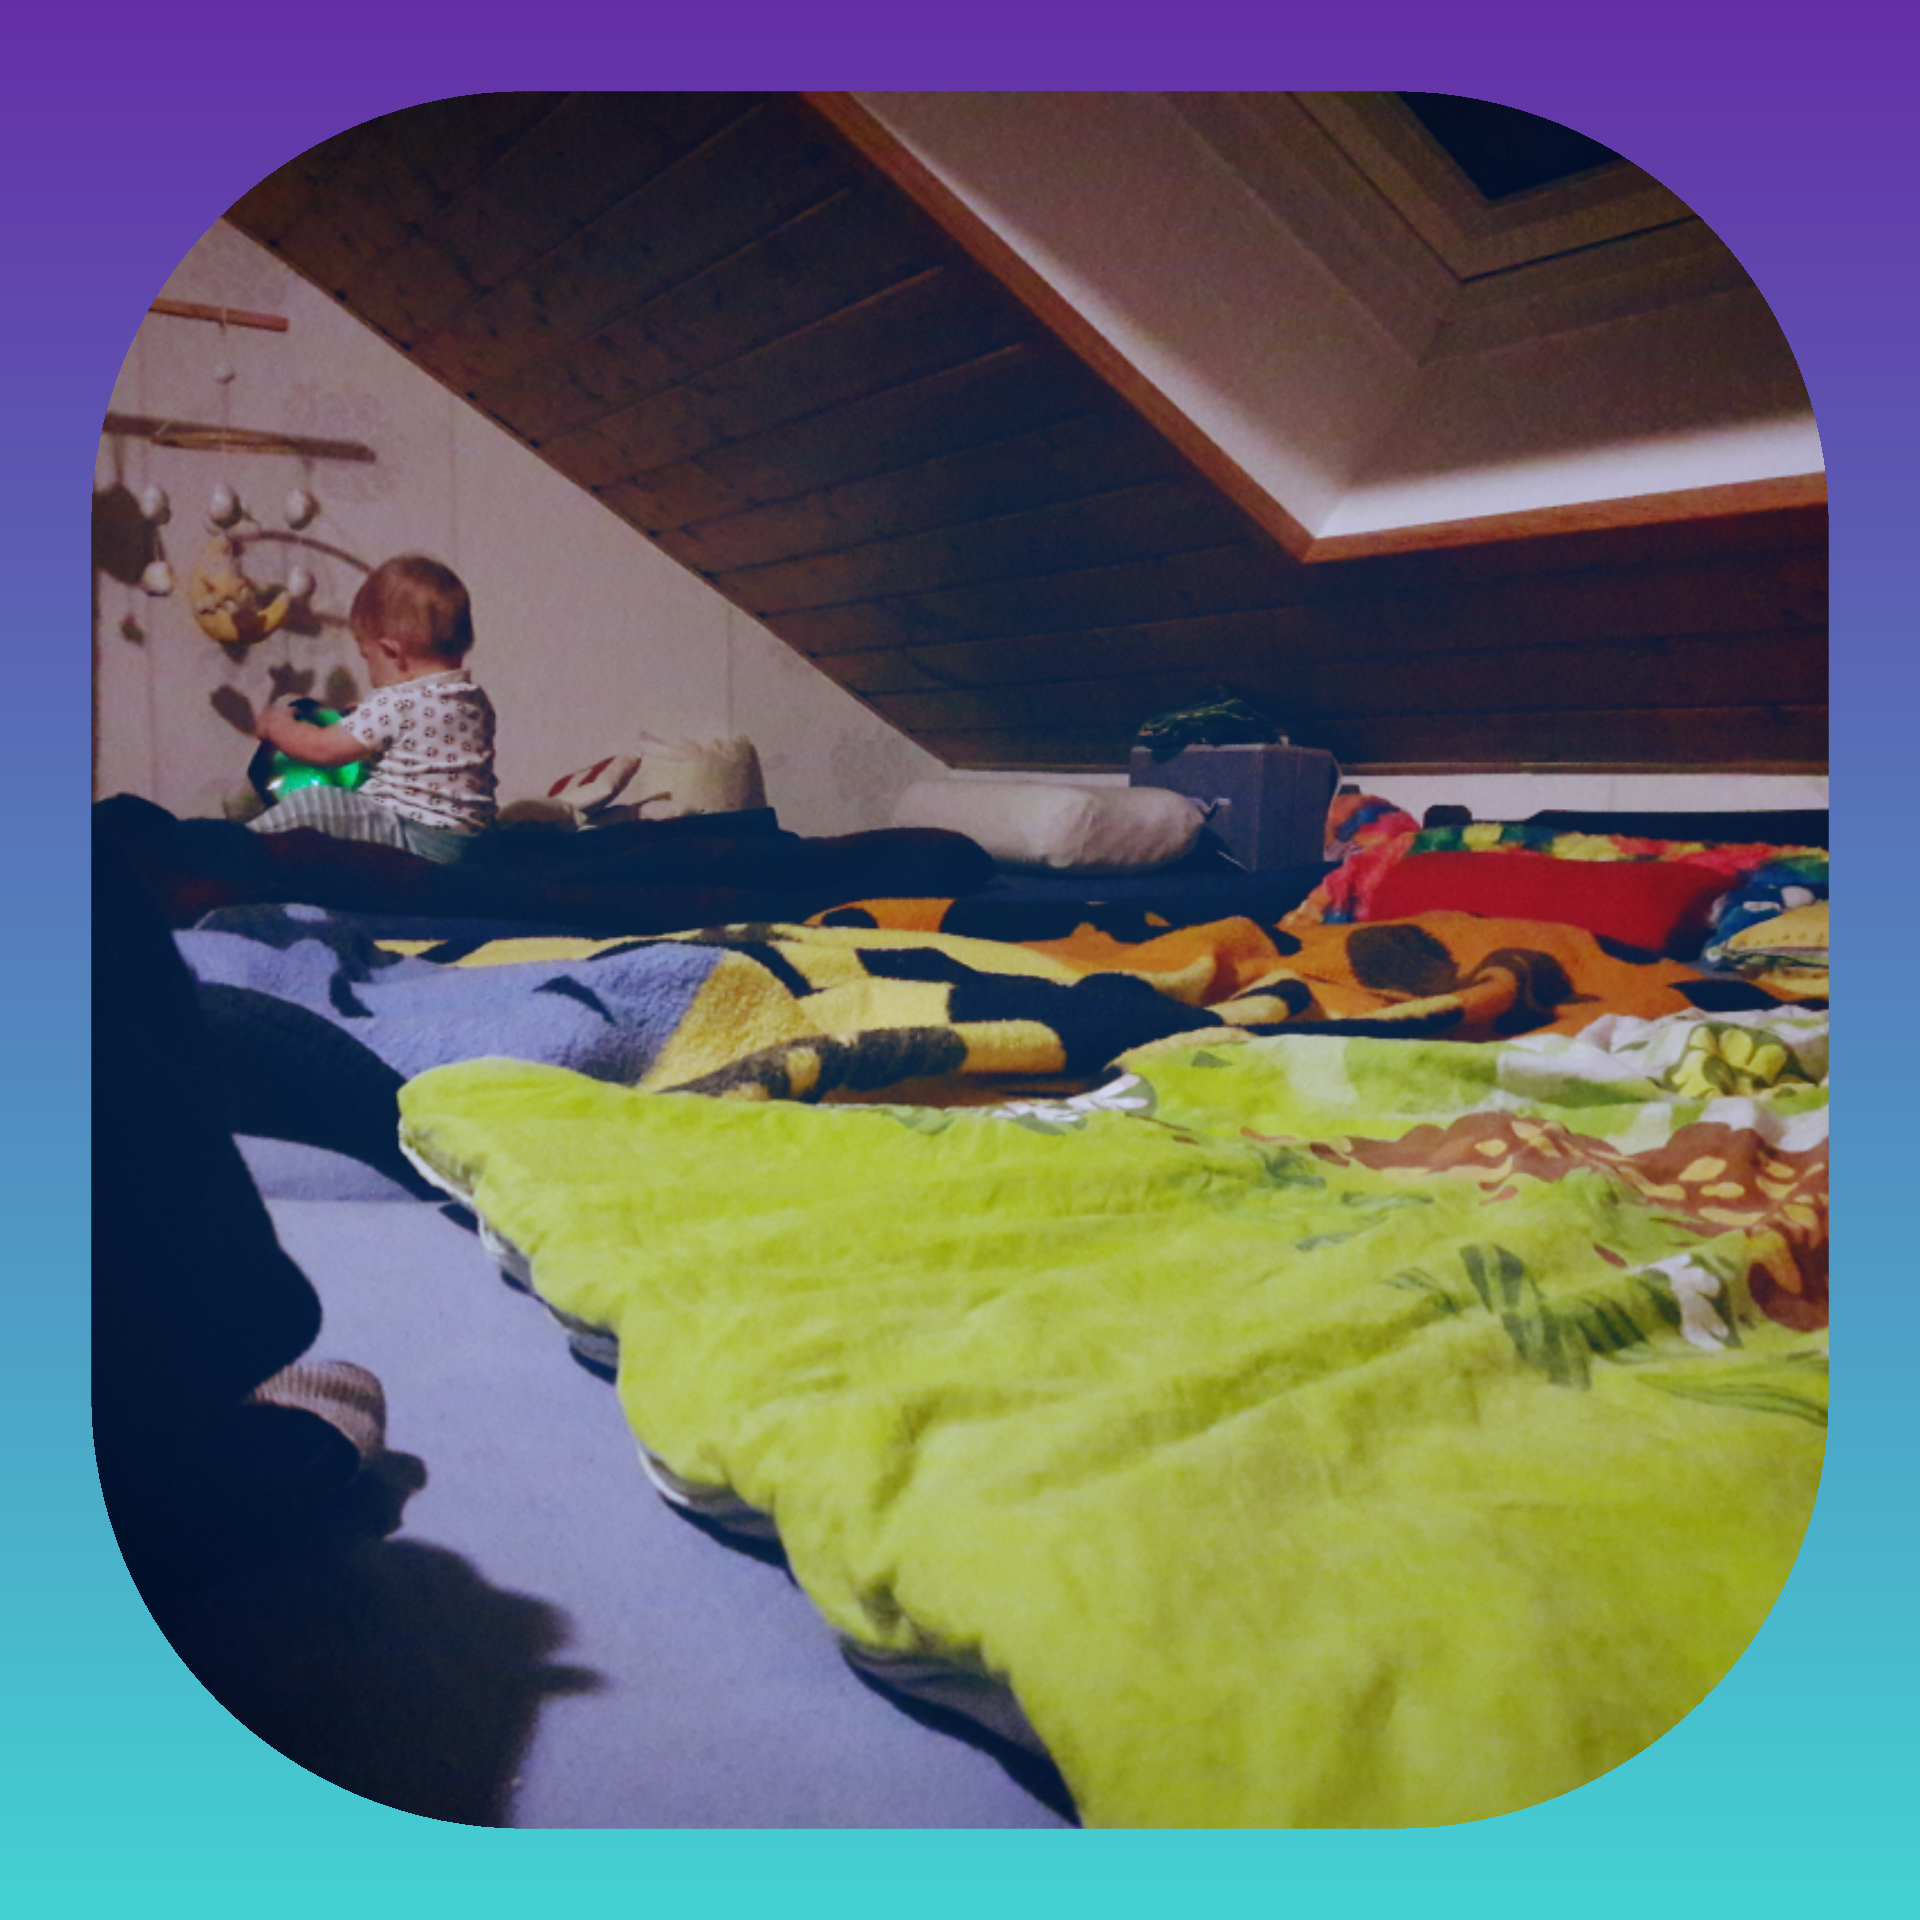 Familienbett – Alle unter einem Dachfenster!